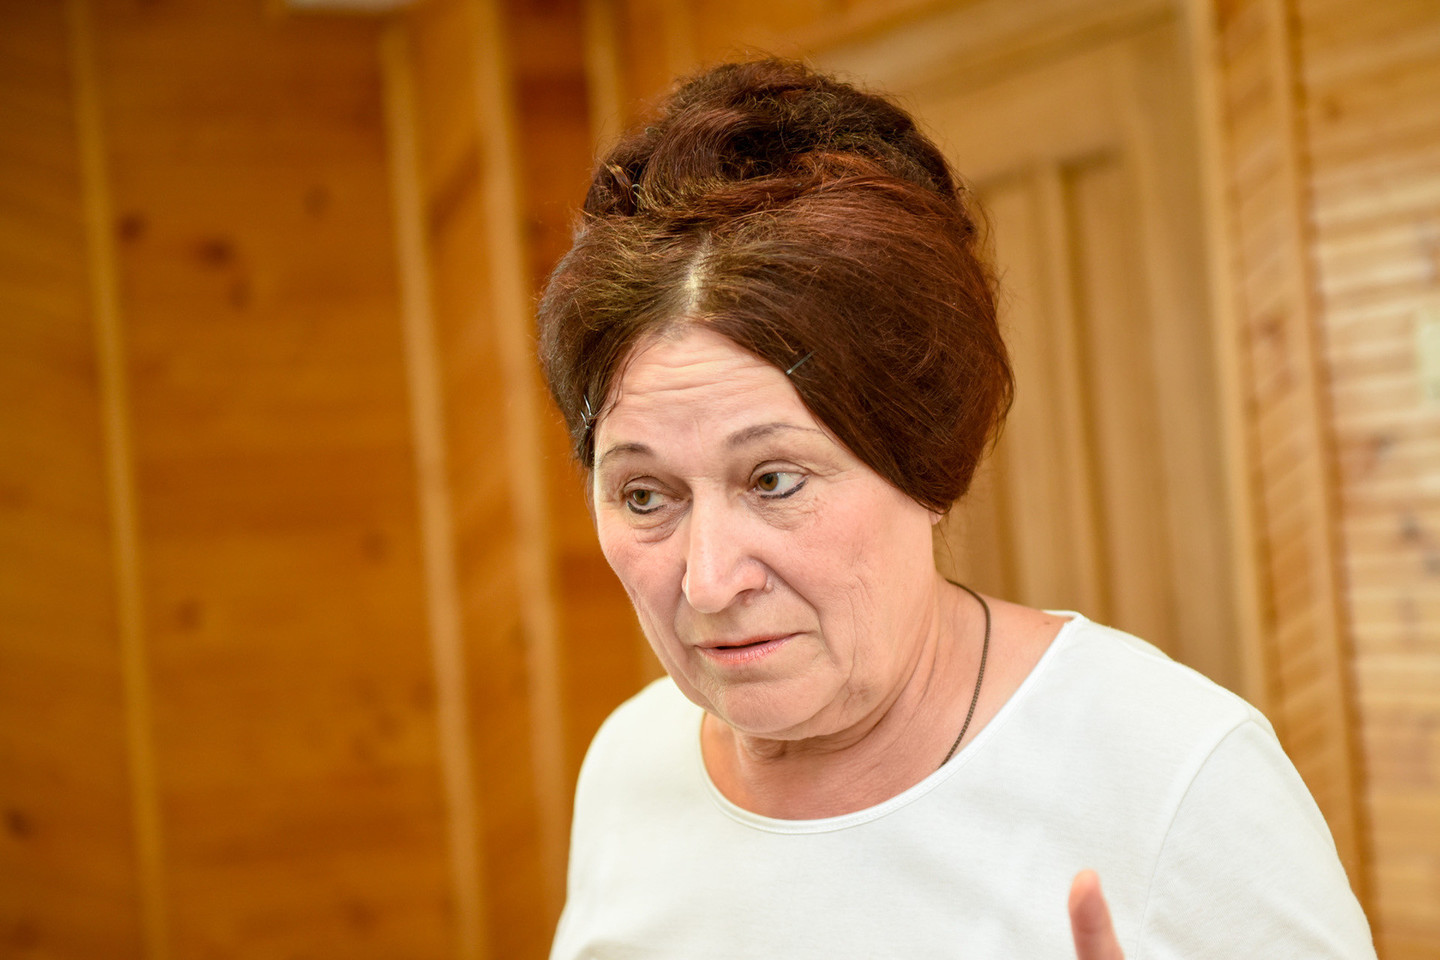 Jauniausiai stovyklautojai tik septyneri, o vyriausiai – net 70 metų. Jos vardas Genutė ir ji atvyko iš Sibiro su savo anūke, kad ji išmokti skaityti, rašyti ir kalbėti lietuviškai.<br>D.Umbraso nuotr.